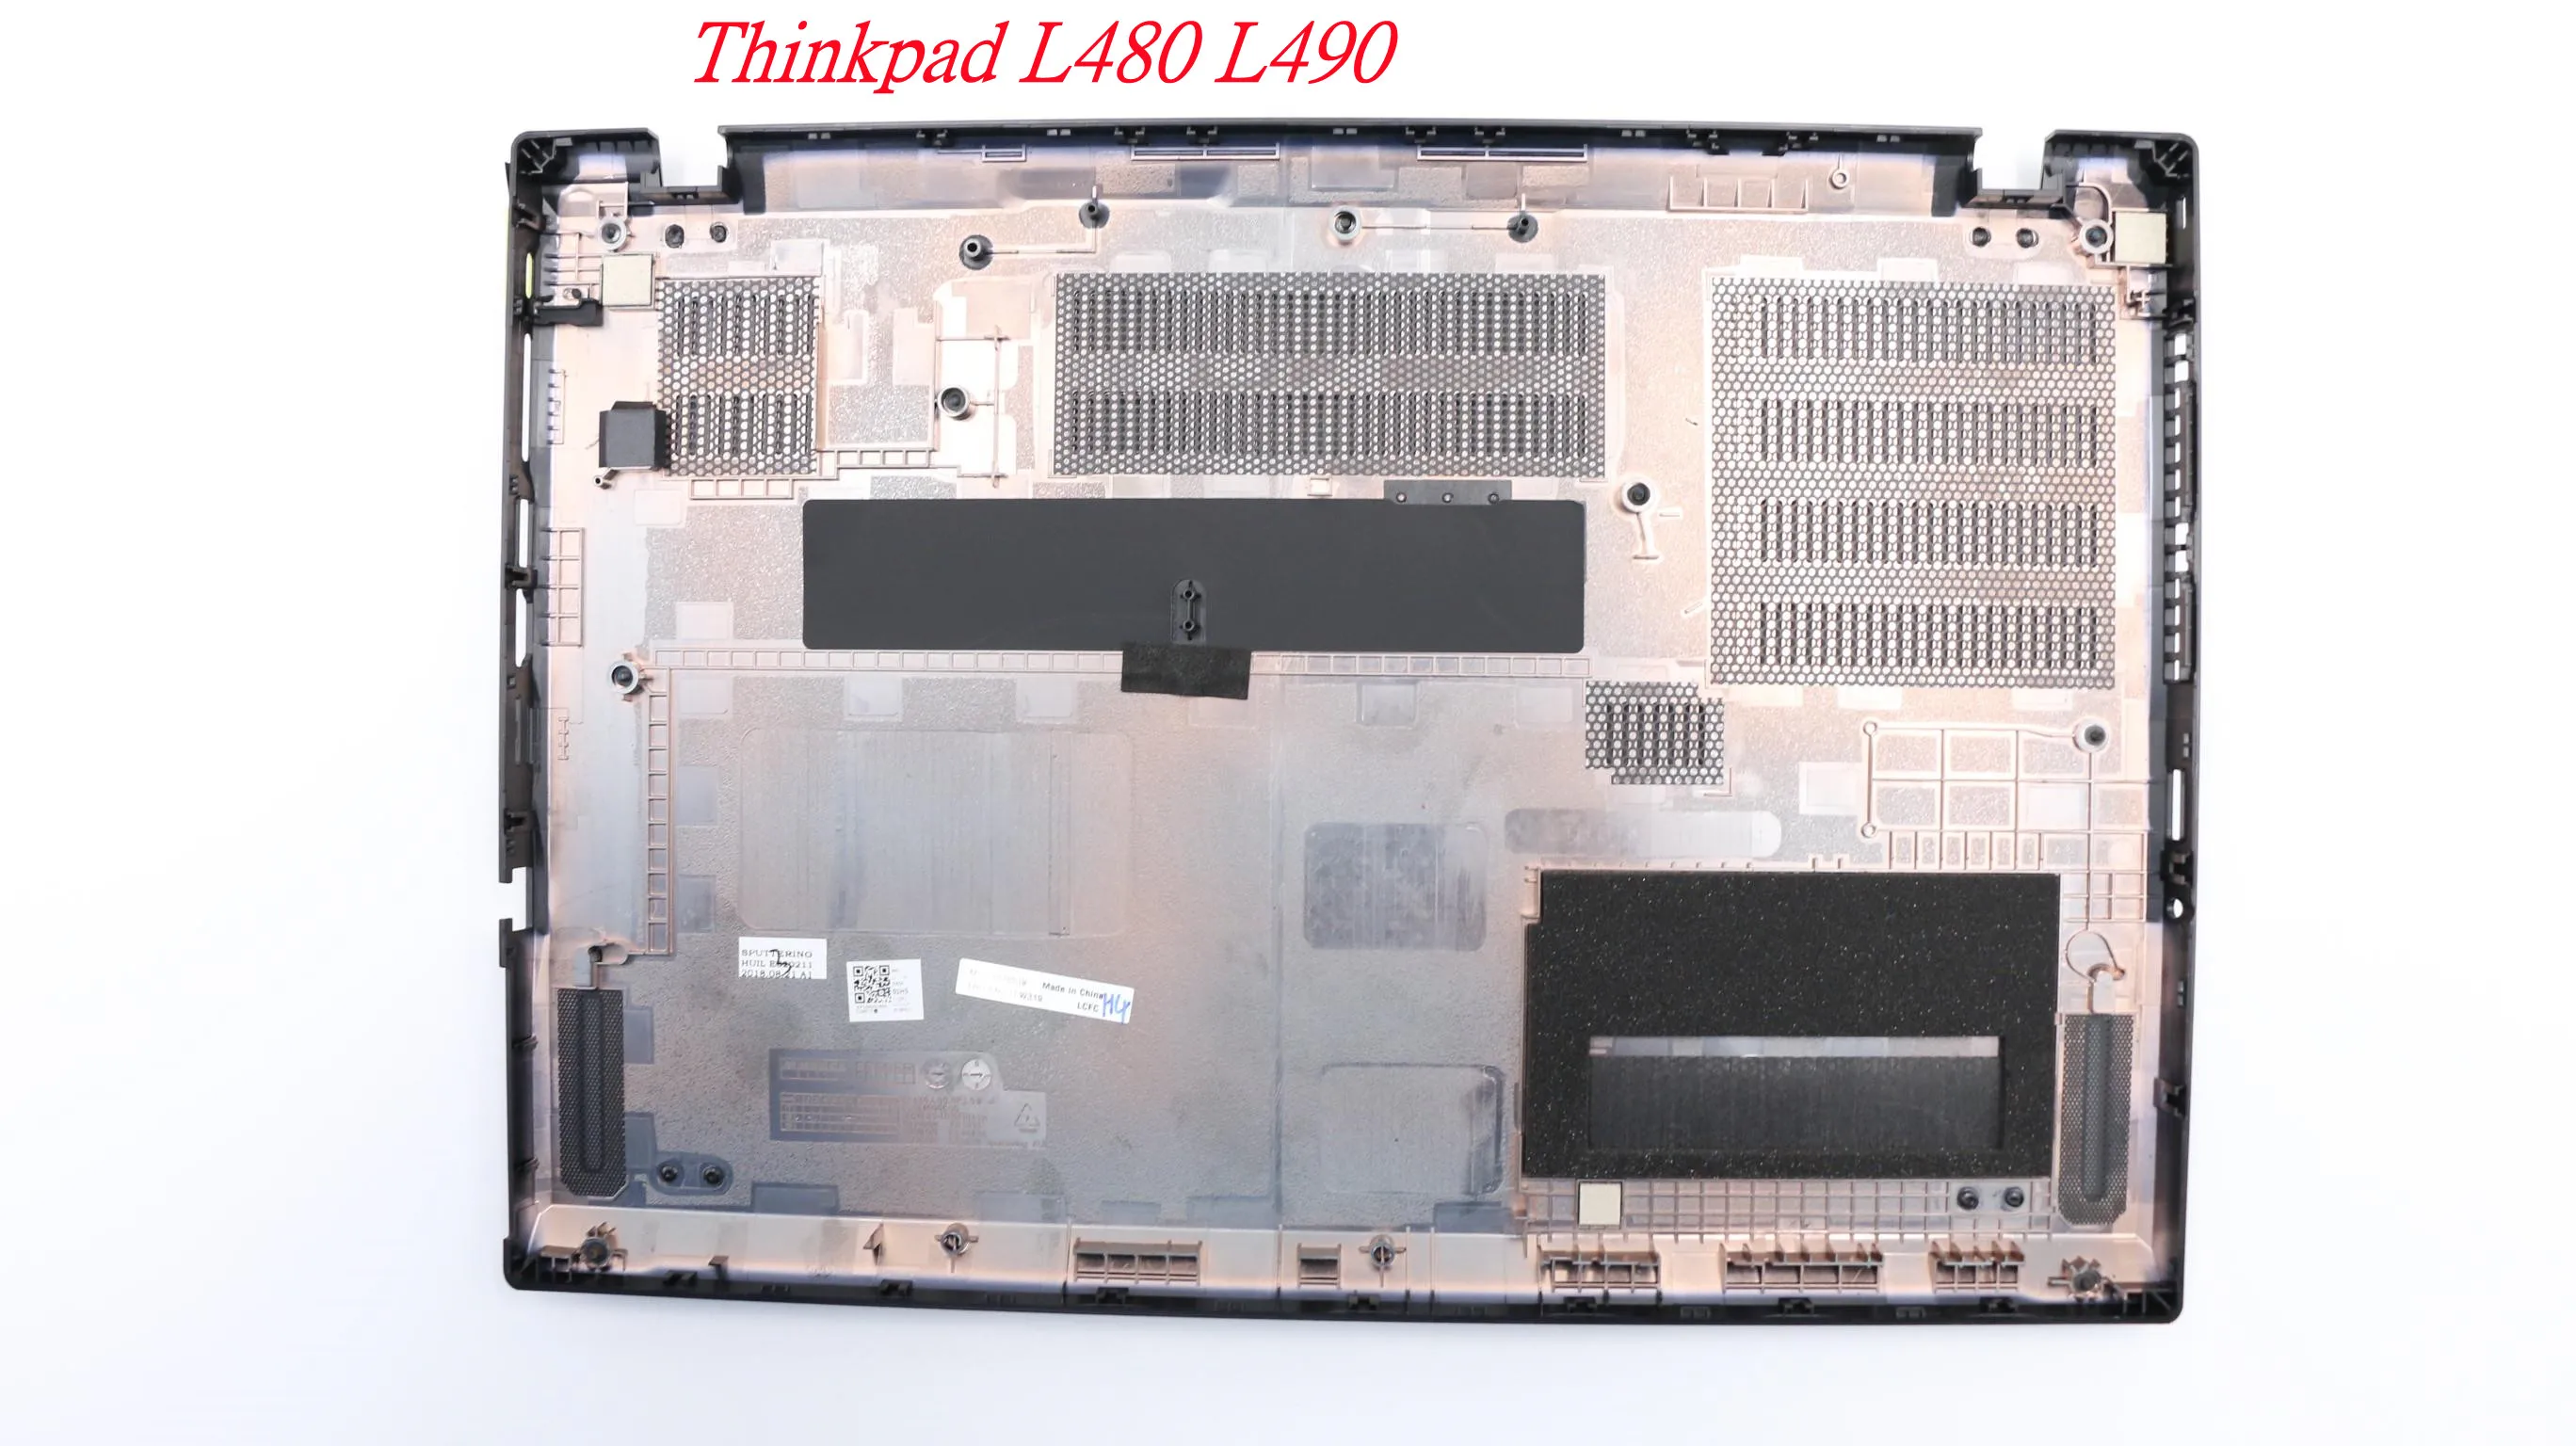 

Новый/оригинальный нижний корпус для ноутбука Lenovo Thinkpad L480 L490, нижняя крышка корпуса, Крышка корпуса D 01LW319 AP164000800